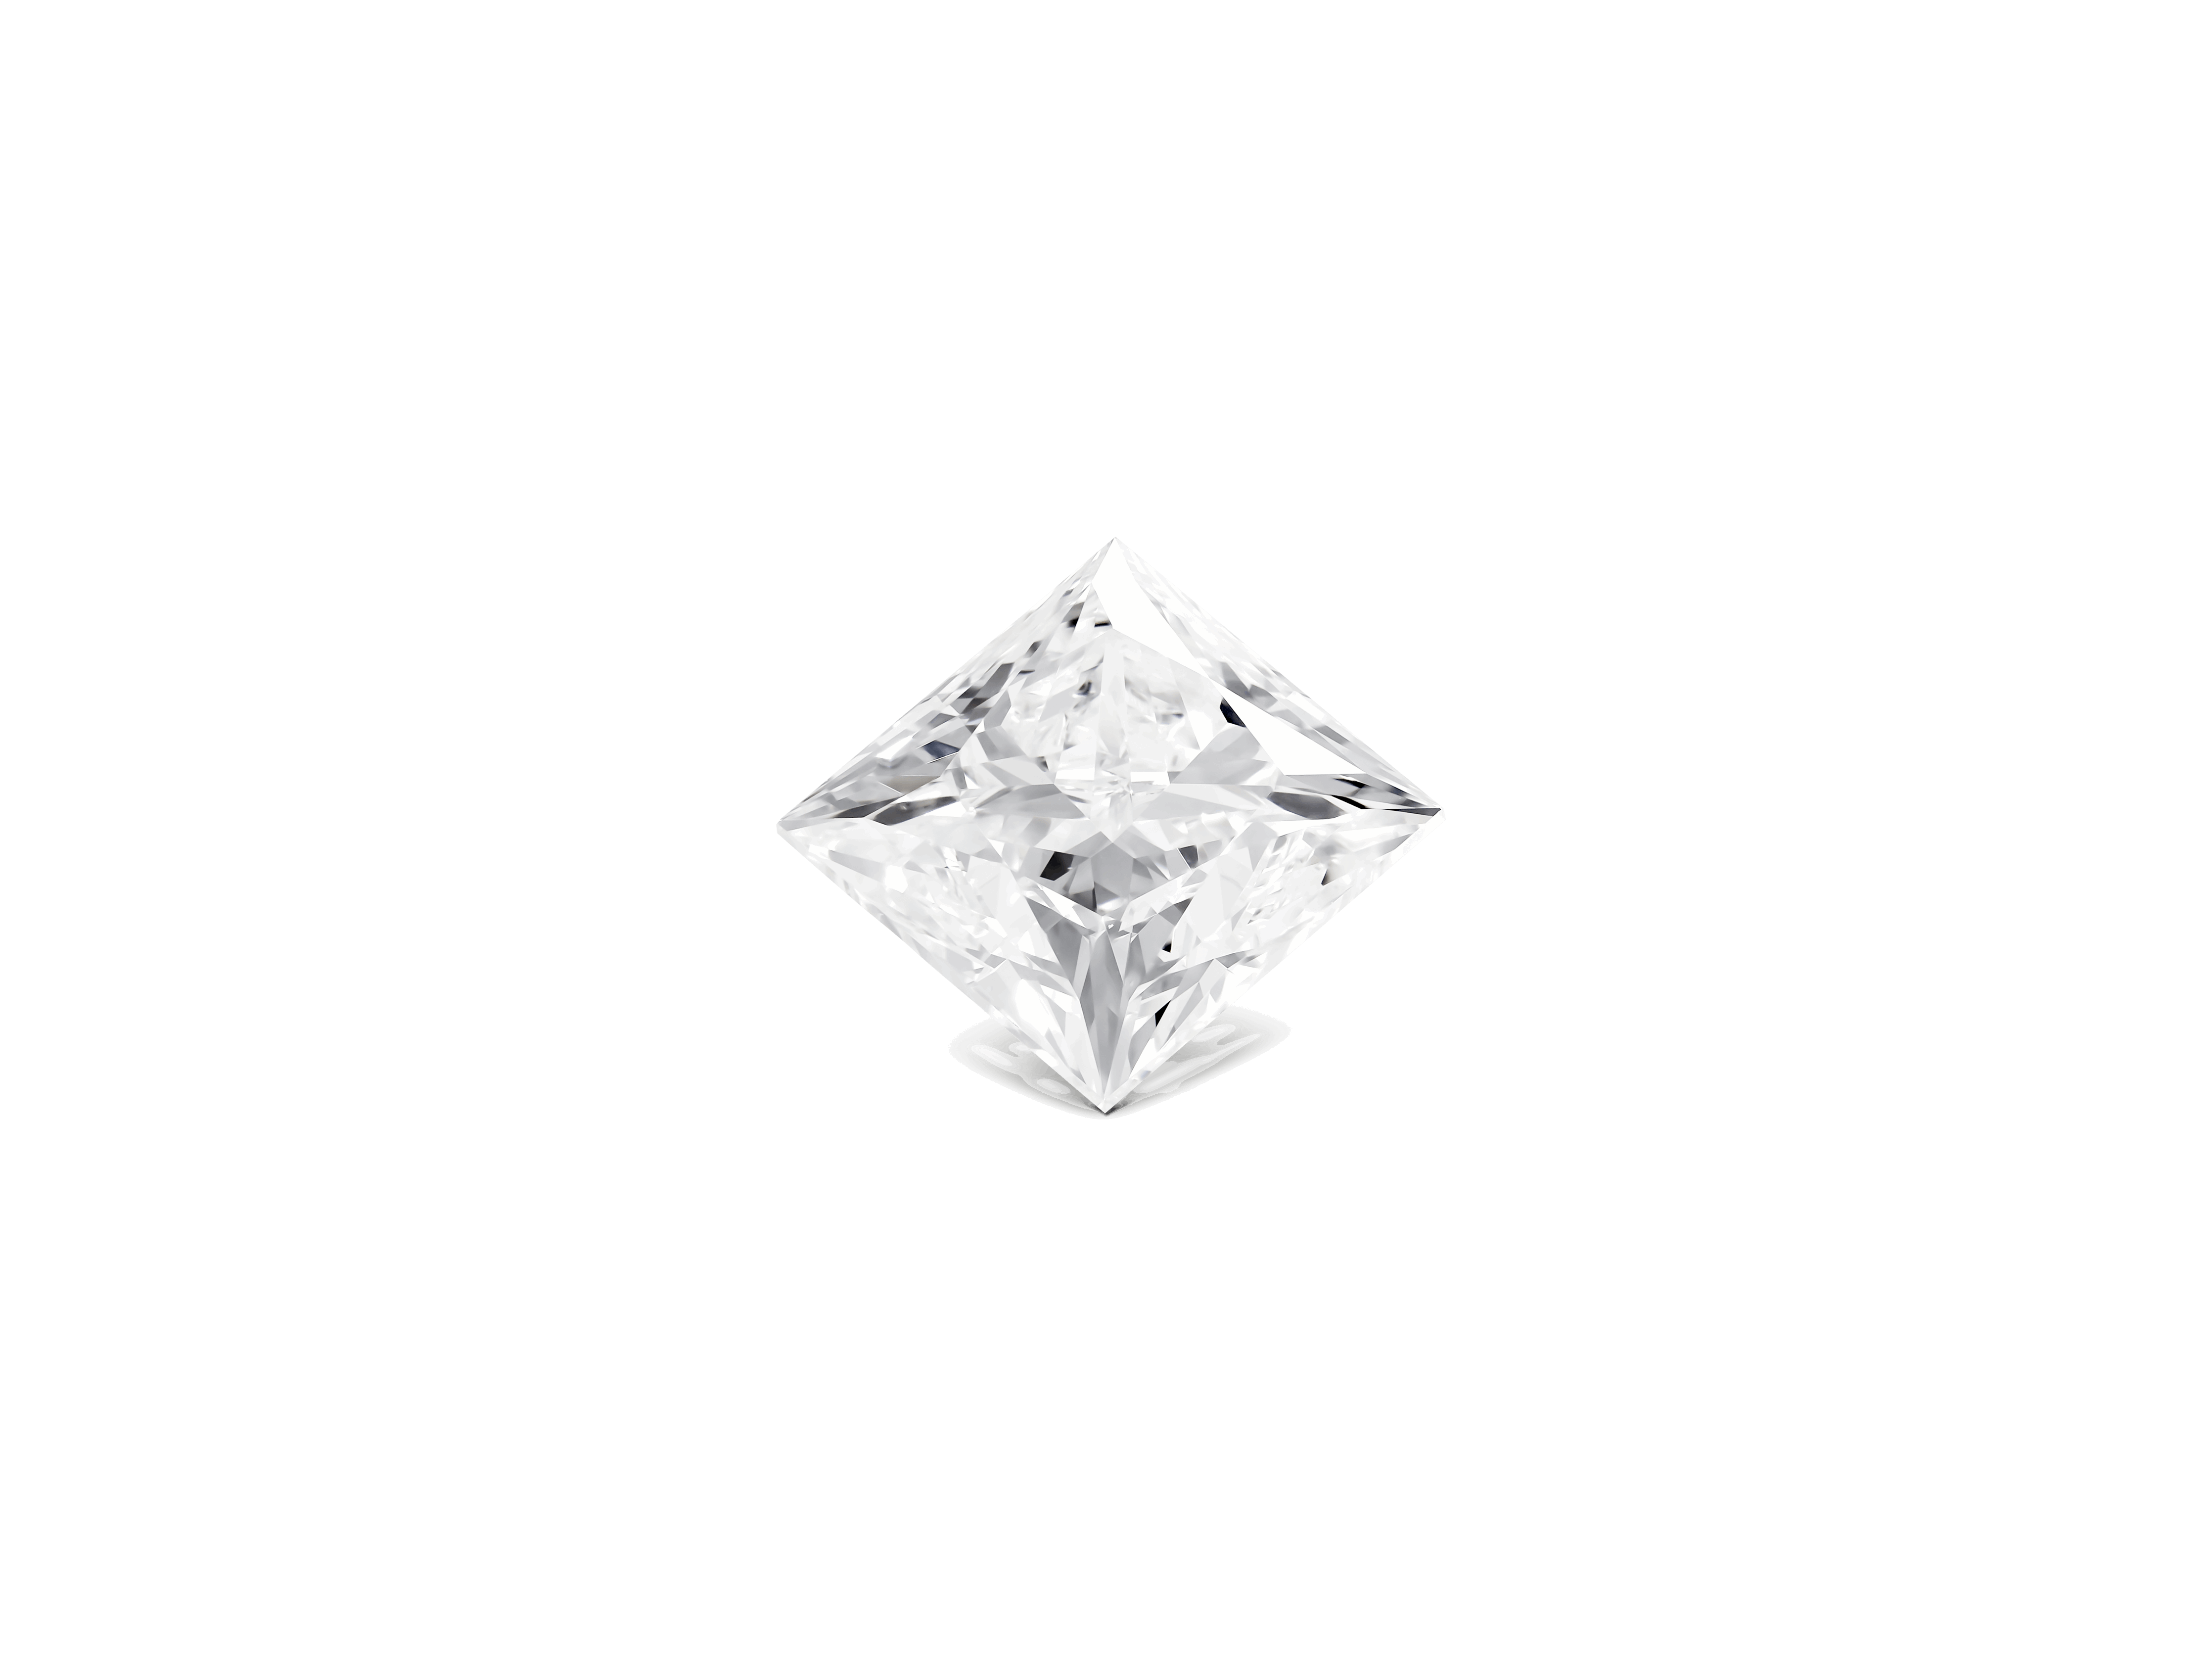 Front view of 3 carat princess cut diamond